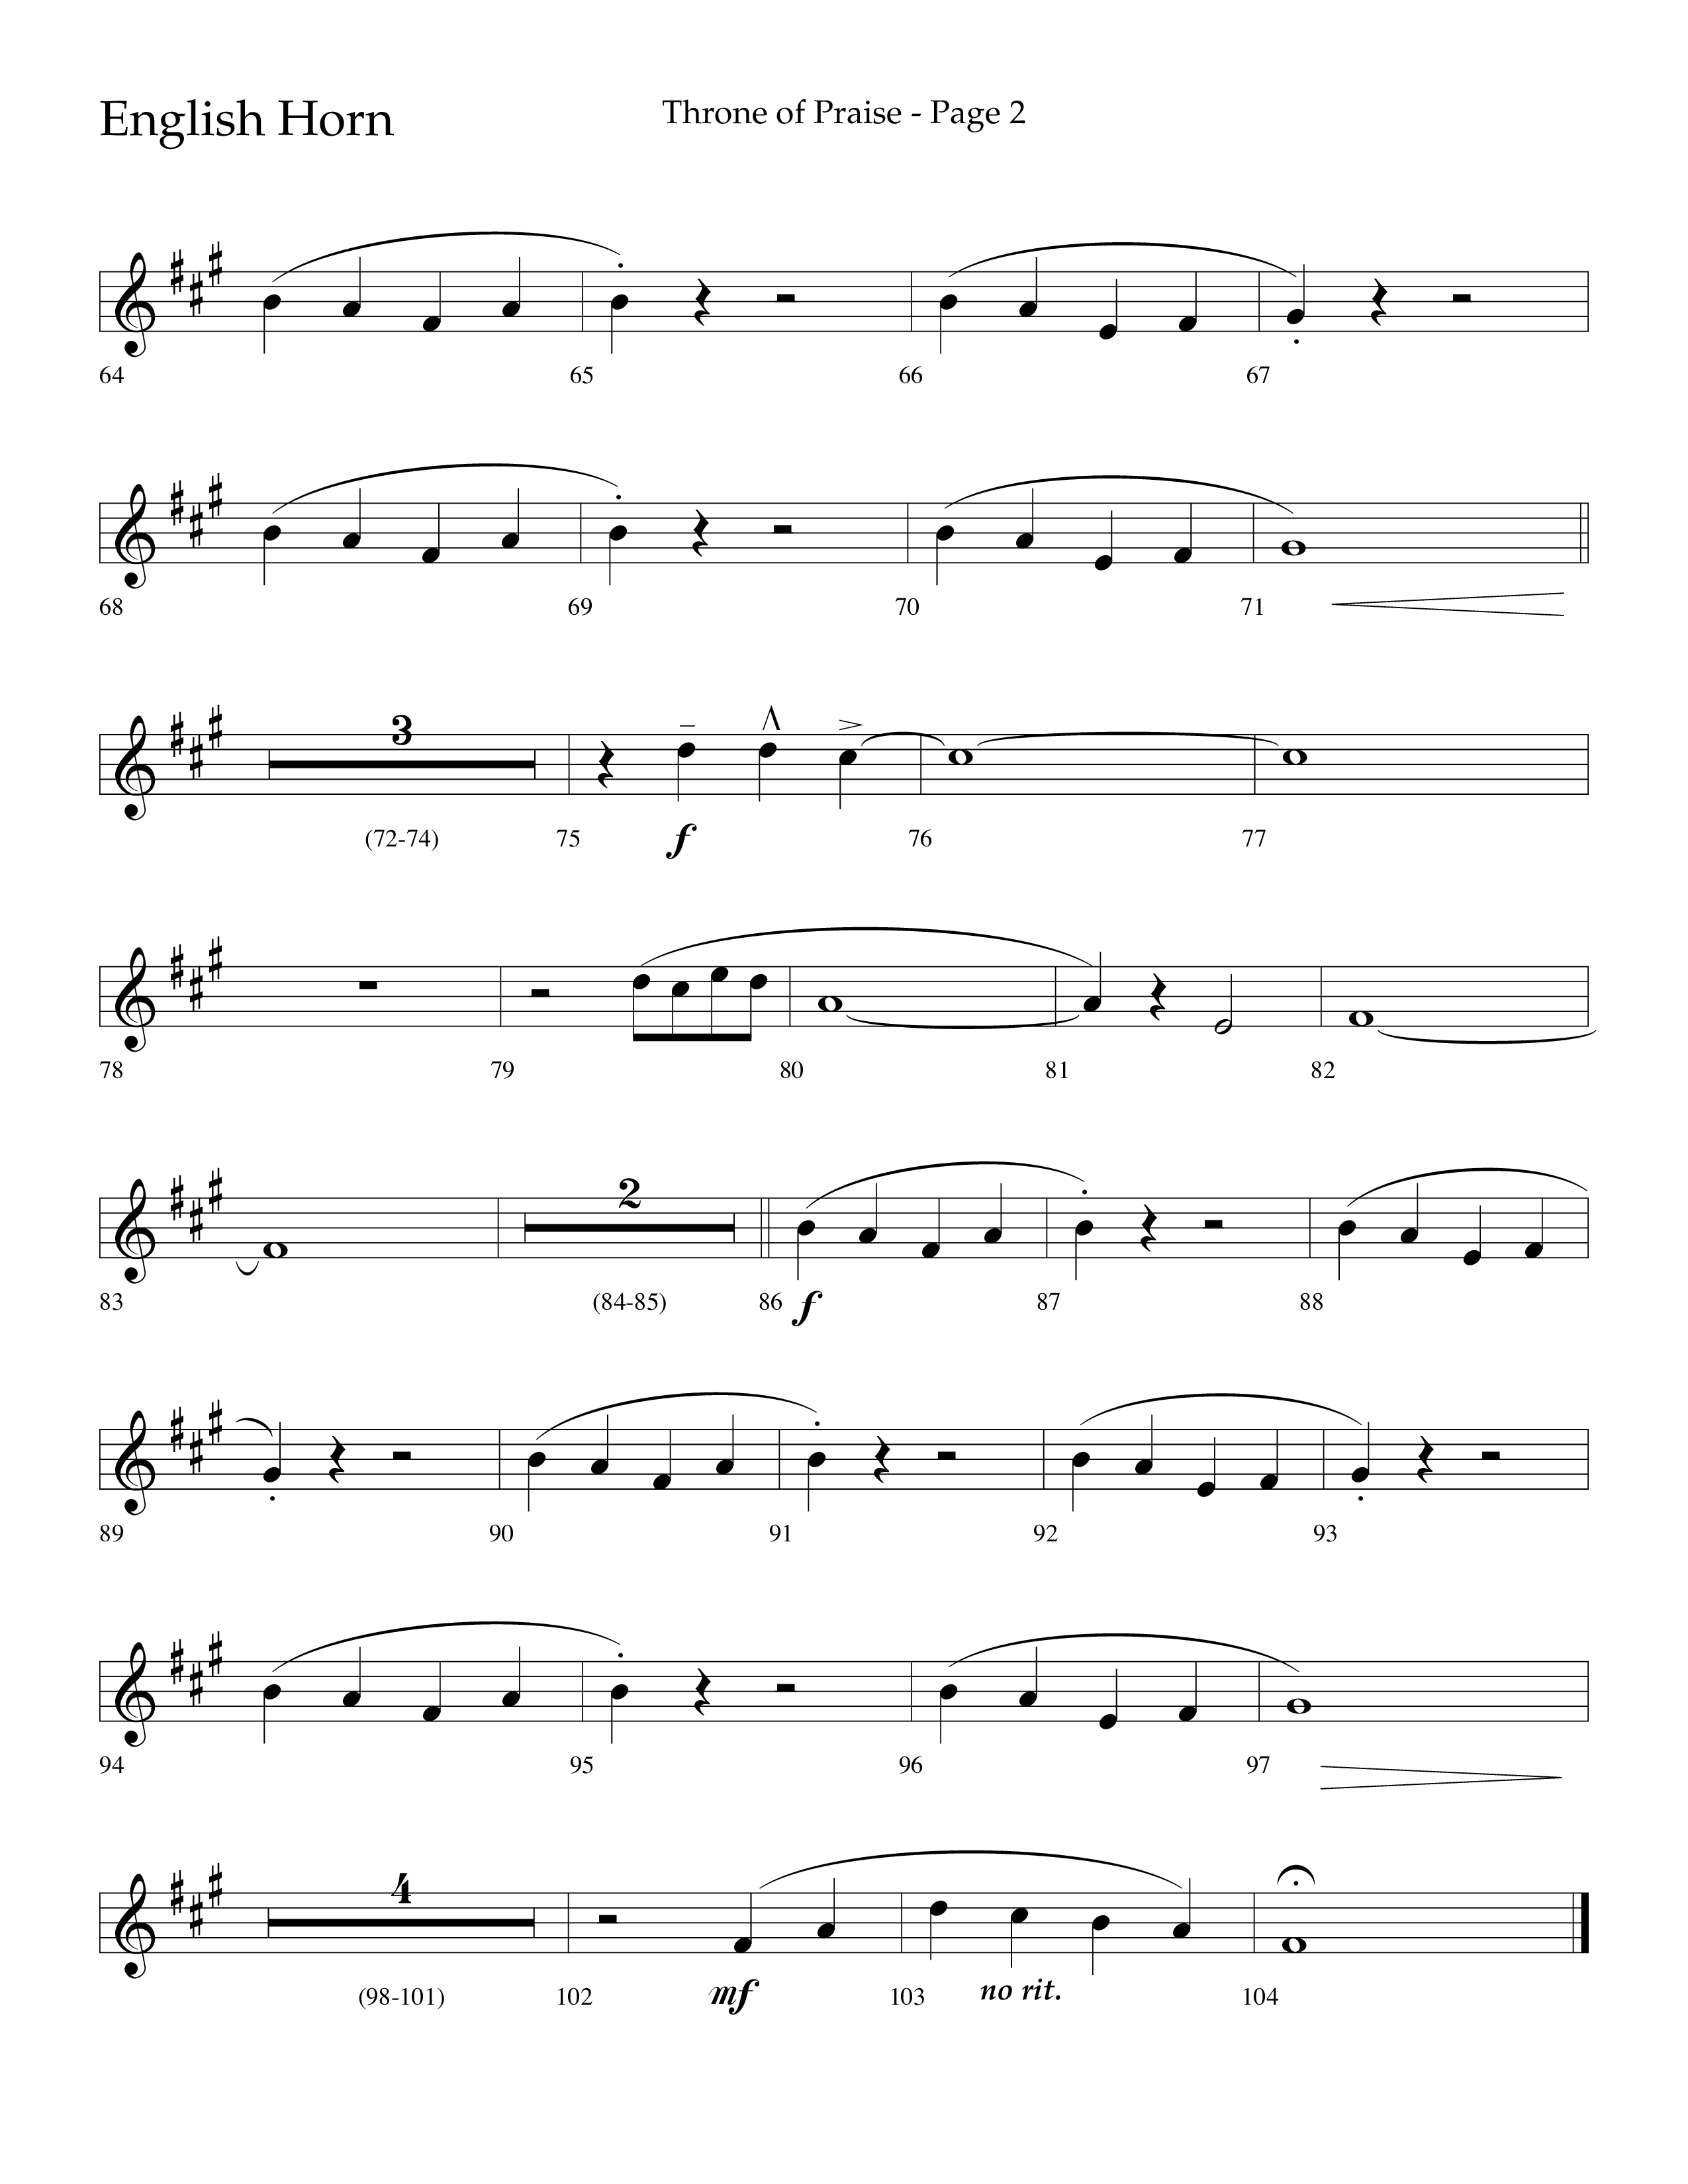 Throne Of Praise (Choral Anthem SATB) English Horn (Lifeway Choral / Arr. J. Daniel Smith)